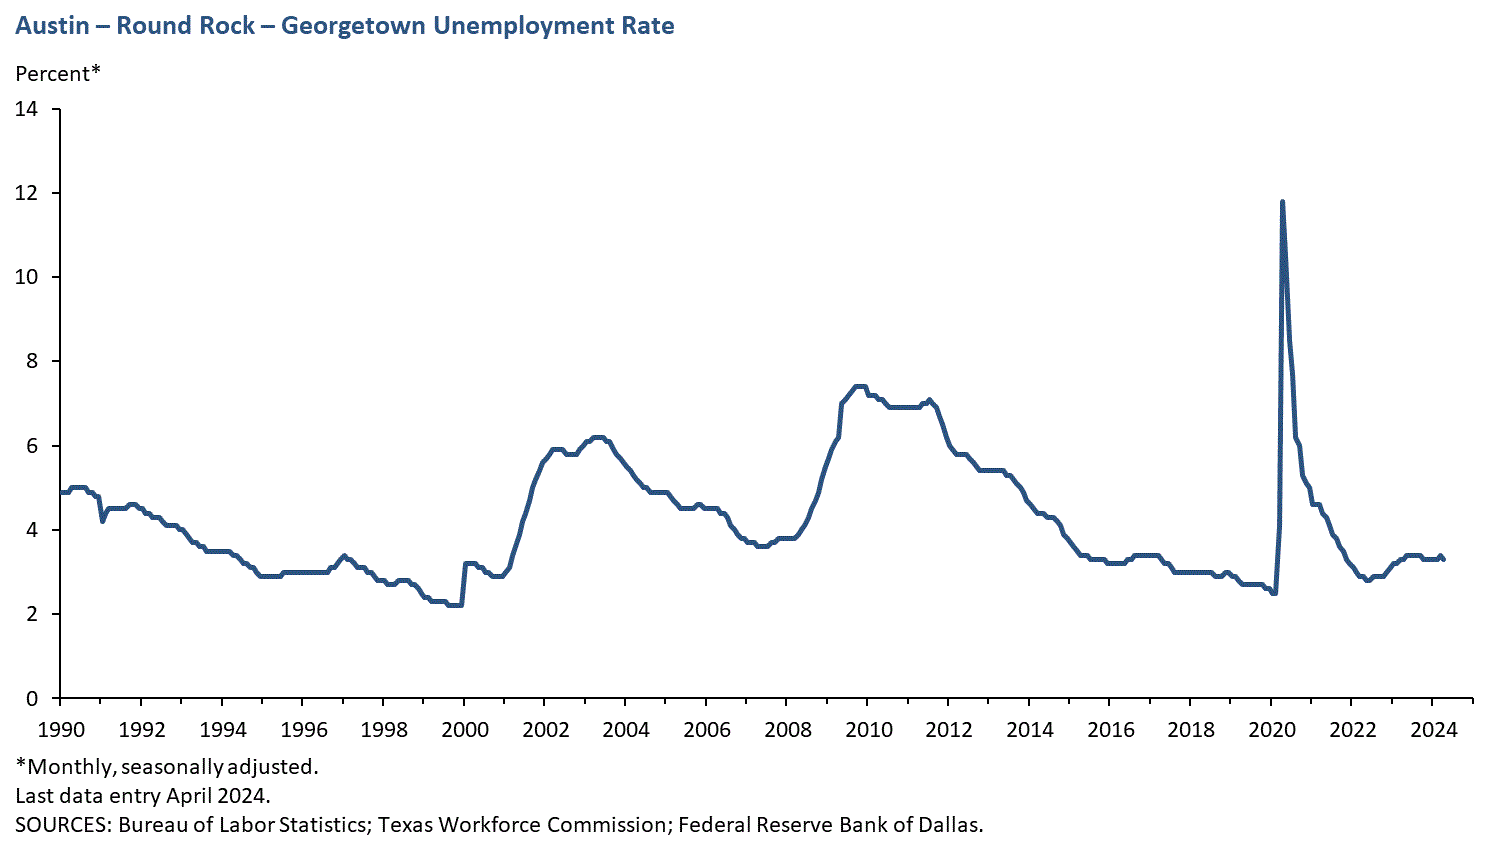 Austin - Round Rock Unemployment Rate